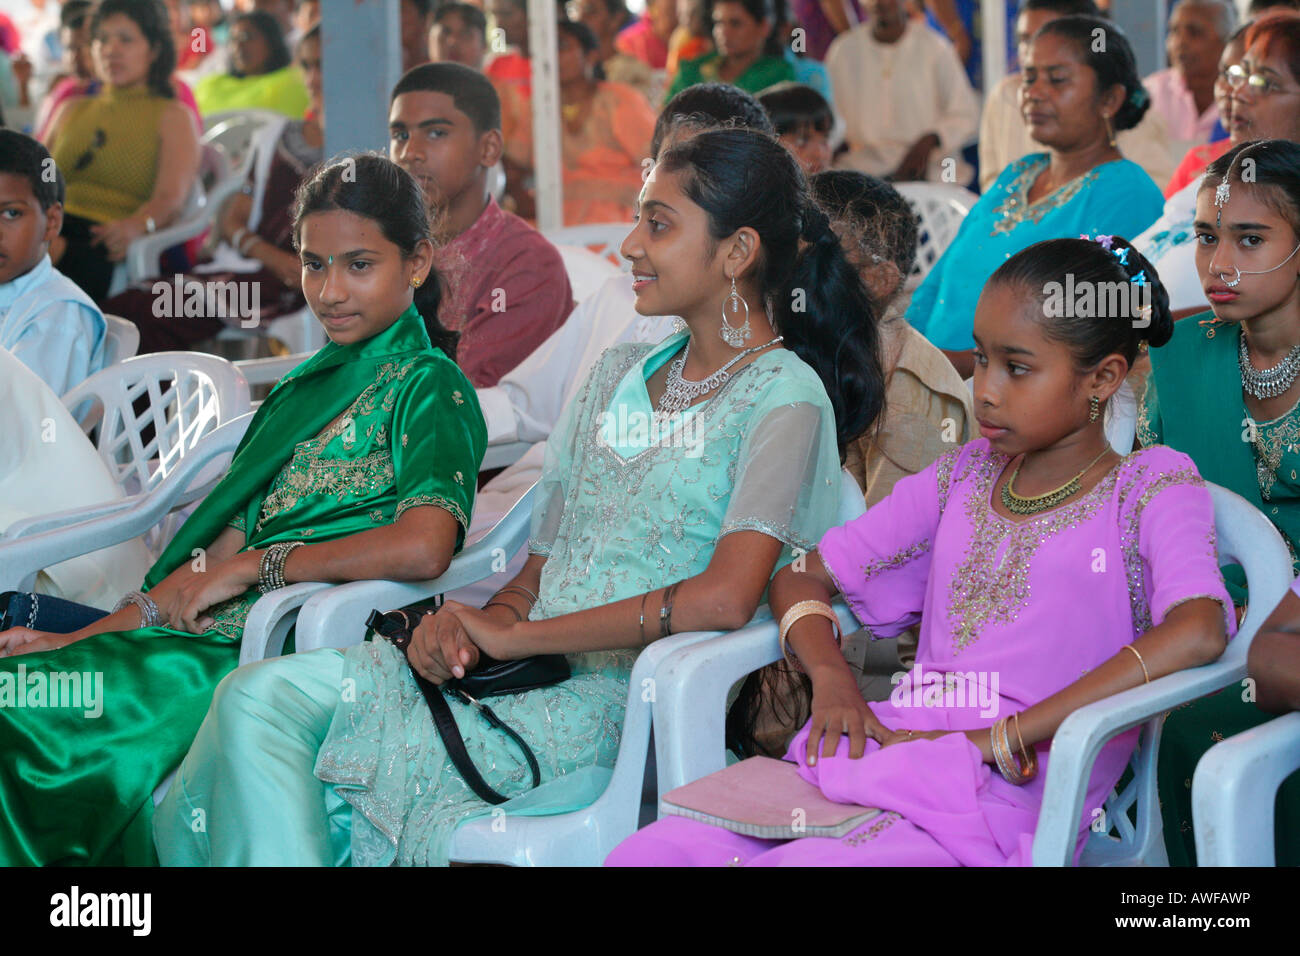 Las niñas de etnia india en un festival hindú, Georgetown, Guyana, Sudamérica Foto de stock